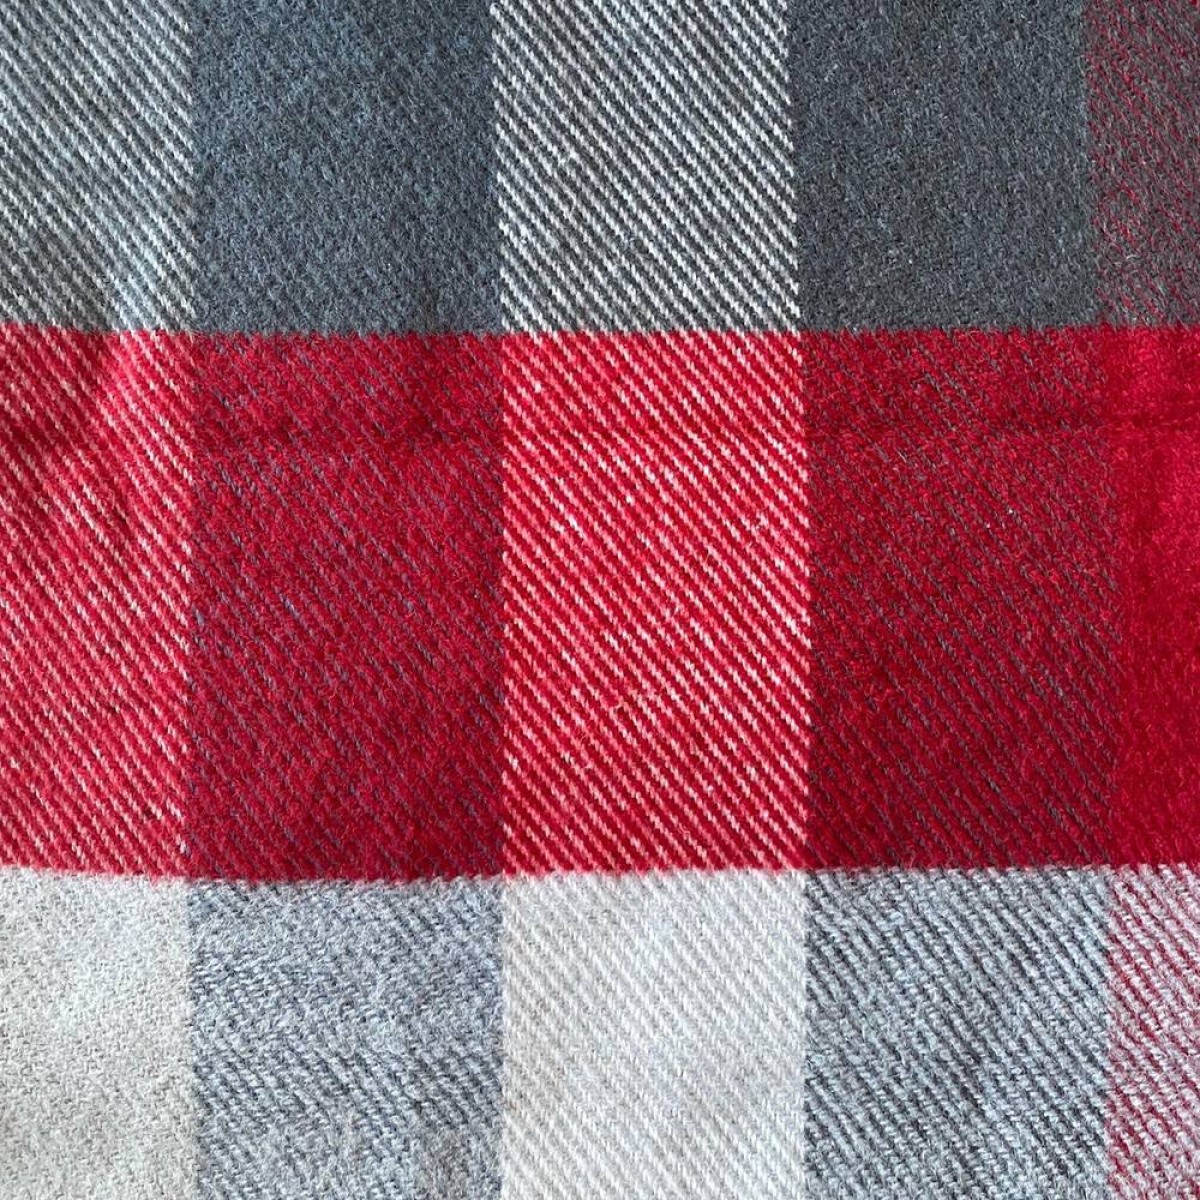 Κουβέρτα - Ριχτάρι από βαμβάκι και ακρυλικό 130x170cm καρώ κόκκινο-μπλε-λευκό χρώμα TNS 39-800-0022